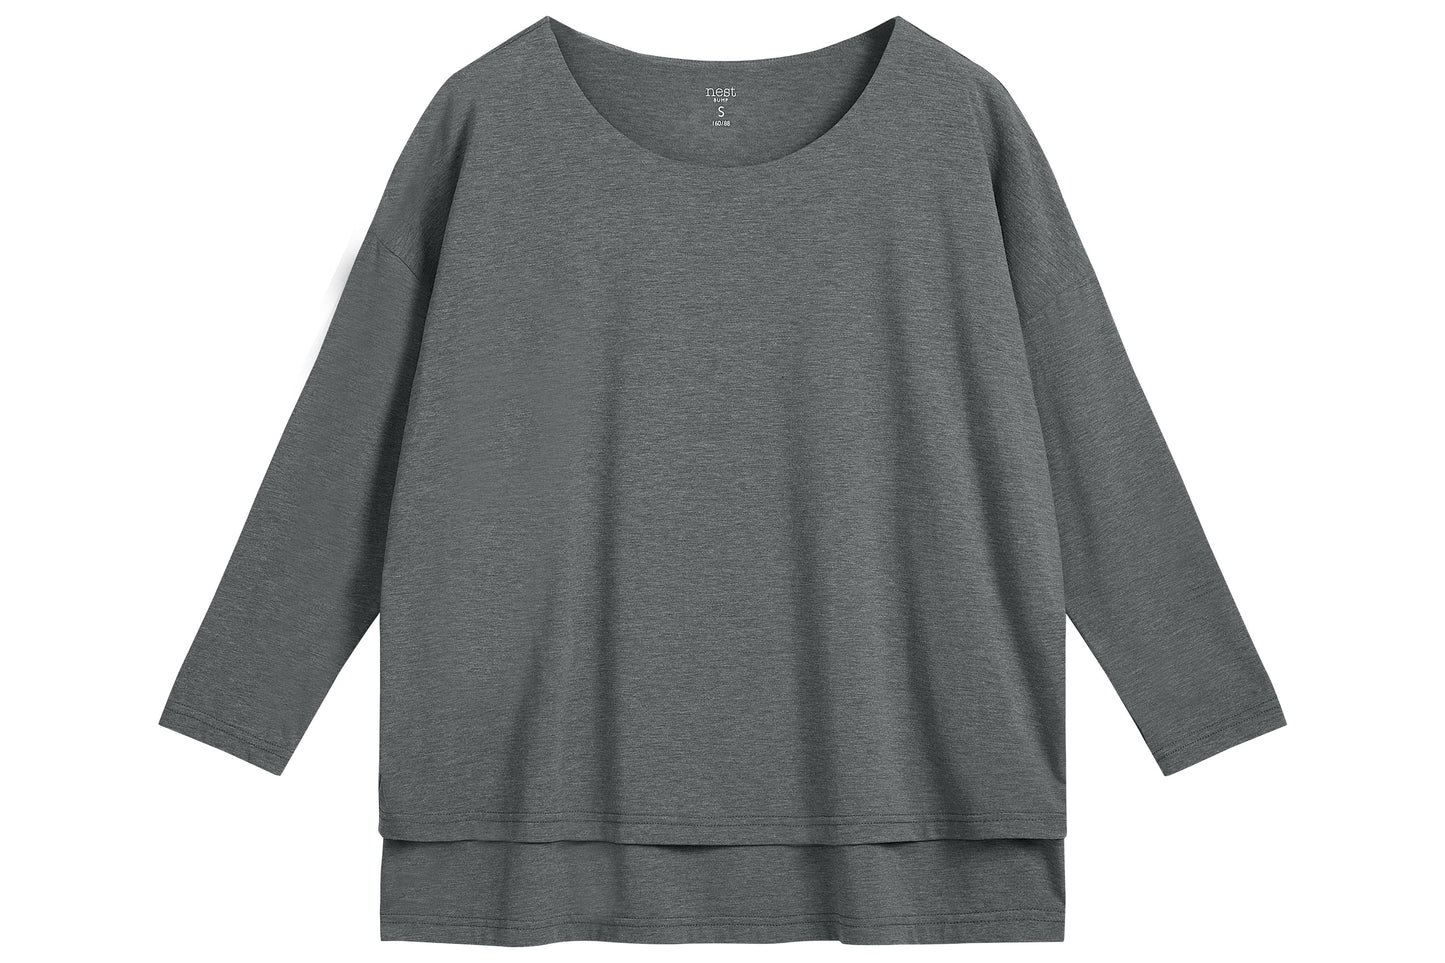 Nest Bump Women's Long Sleeve Nursing T-Shirt (Bamboo) - Charcoal